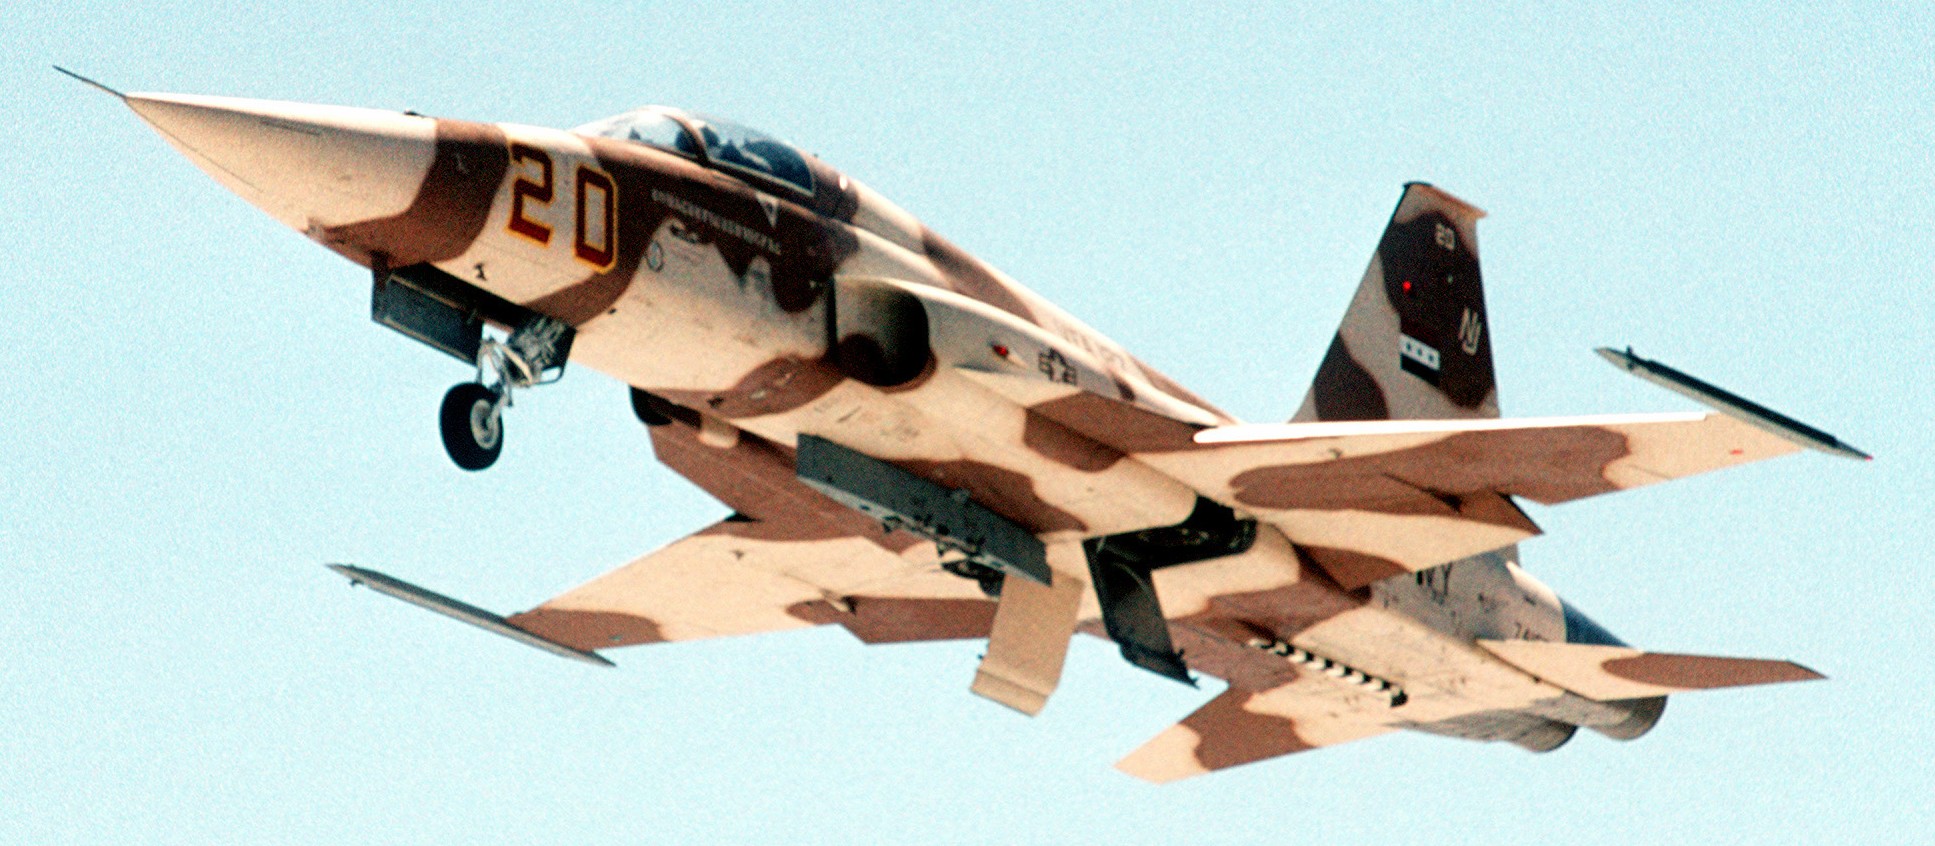 vfa-127 desert bogeys strike fighter squadron f-5e tiger 1993 30 nas fallon